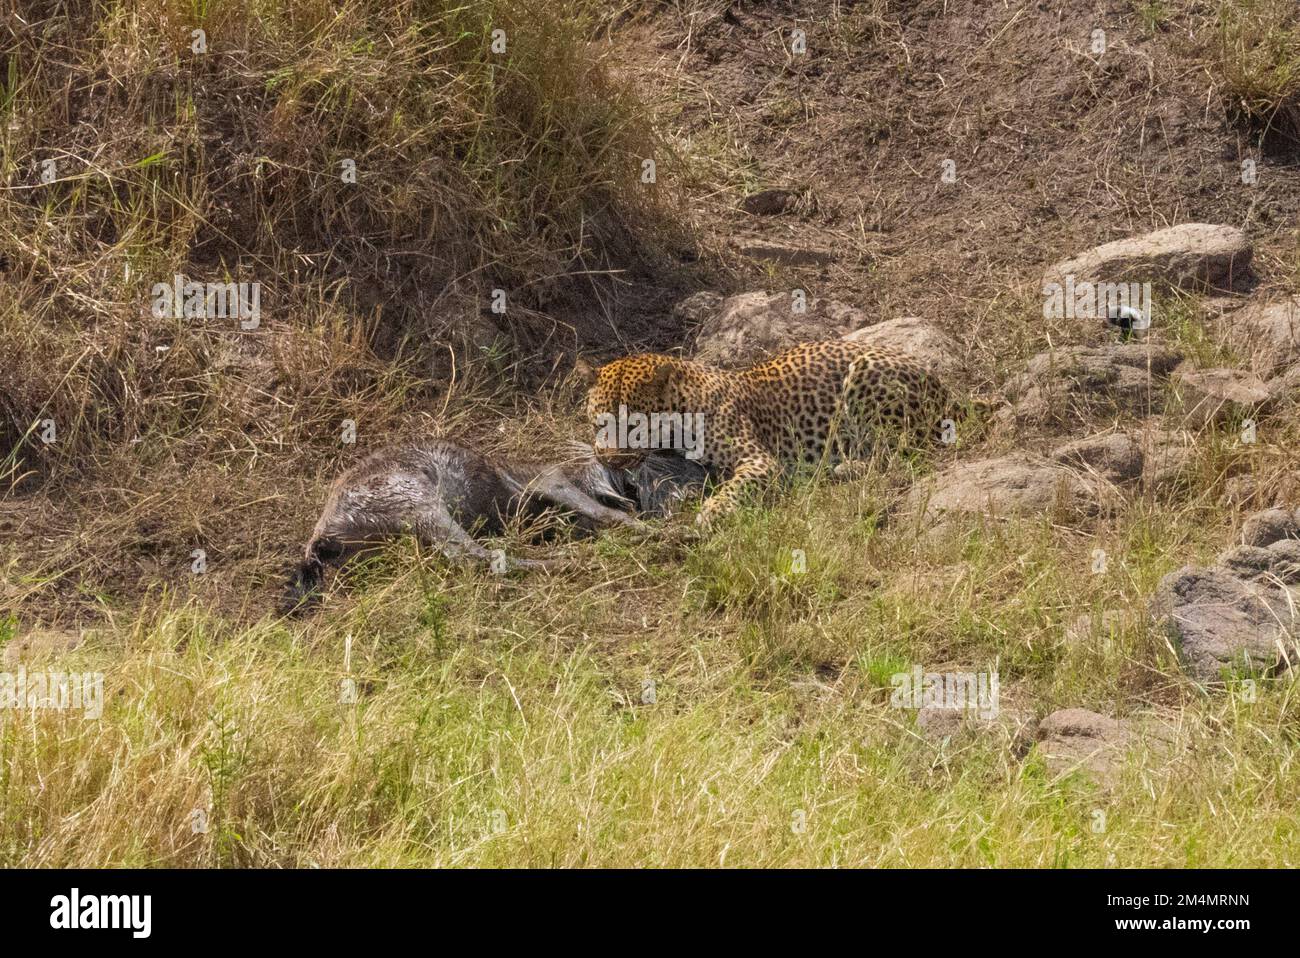 Léopard se nourrissant d'un wildebeest chassé photographié en Tanzanie Banque D'Images